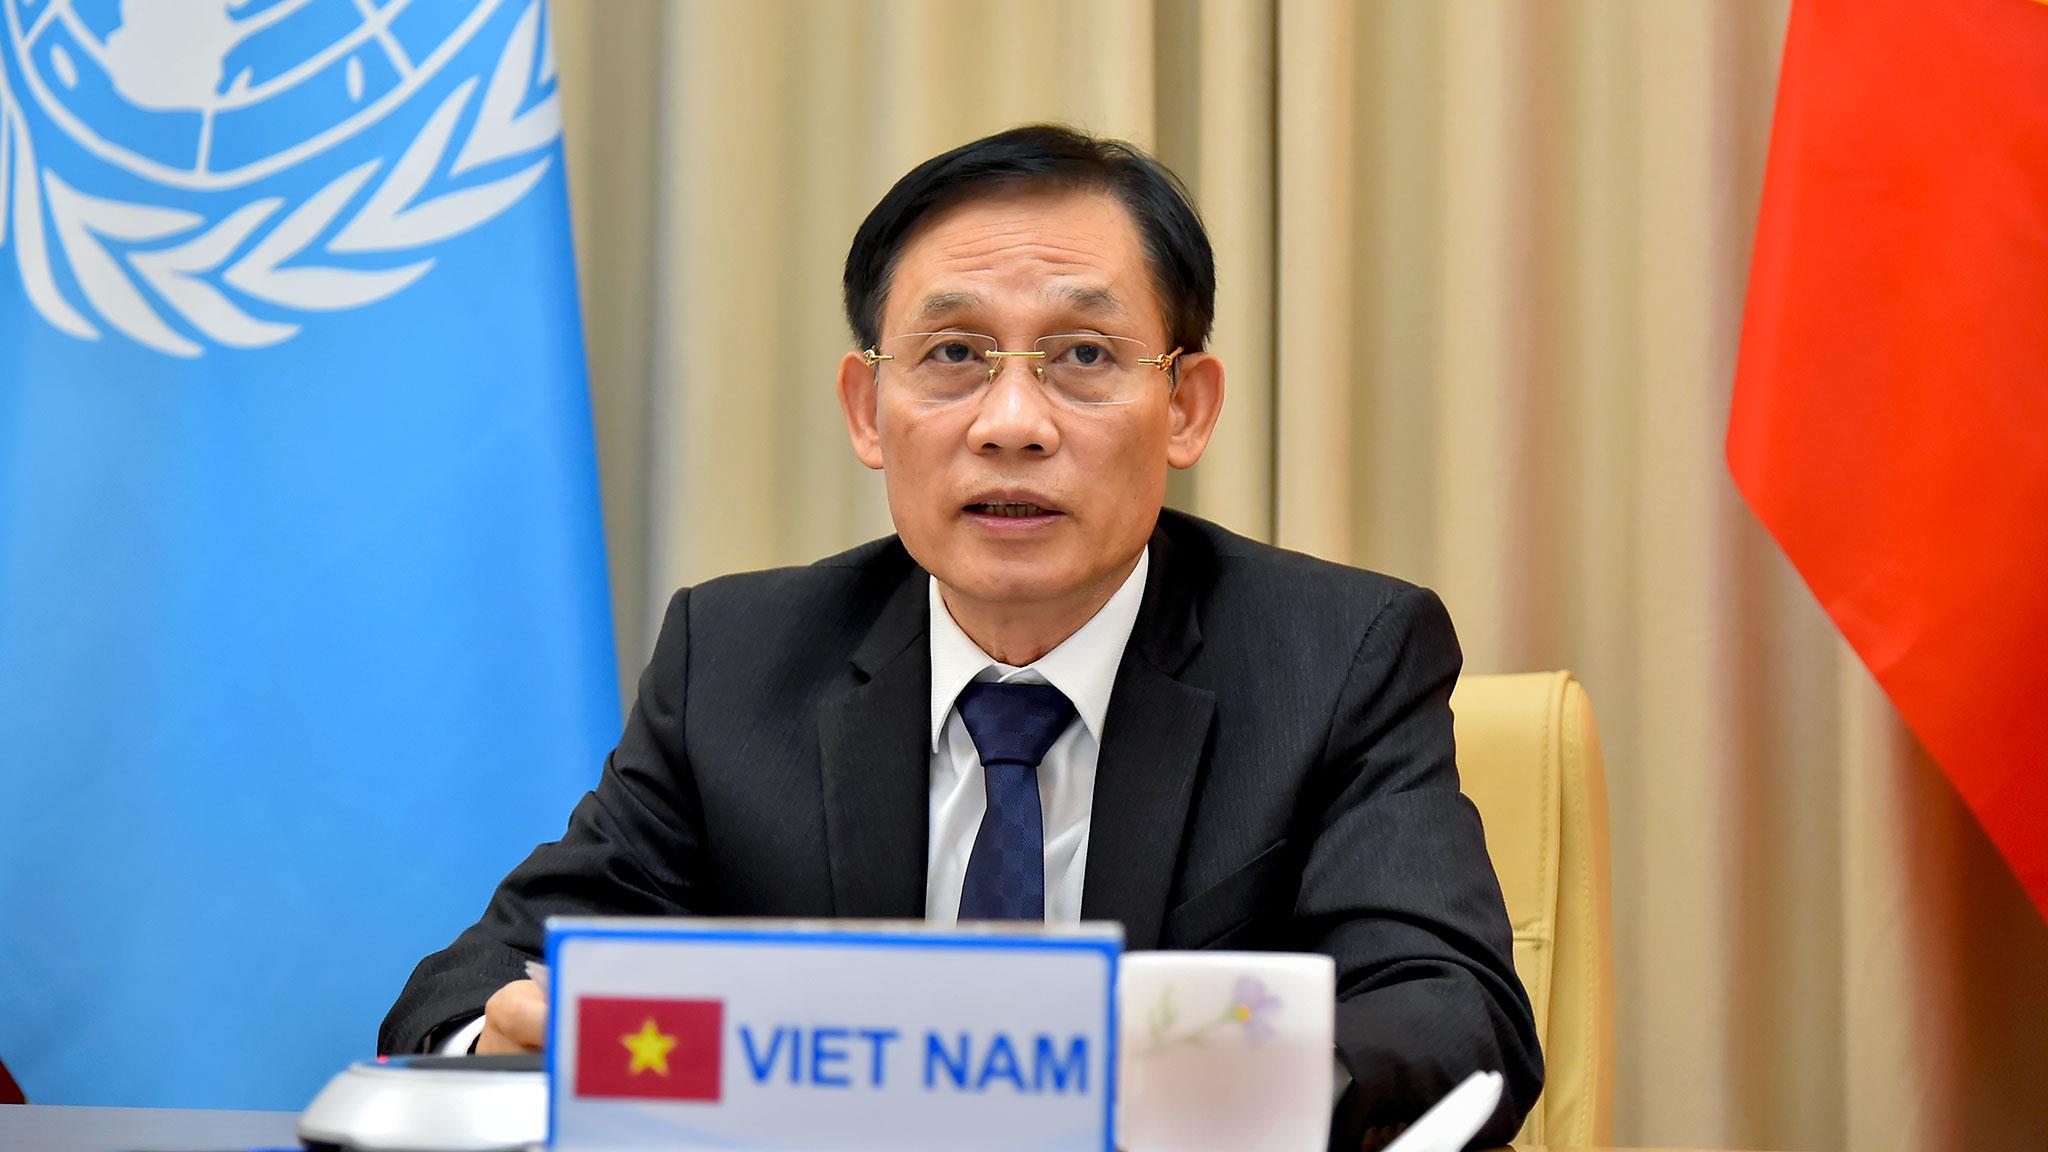 Việt Nam sẵn sàng hợp tác với cộng đồng quốc tế vì một thế giới tốt đẹp, ổn định hơn